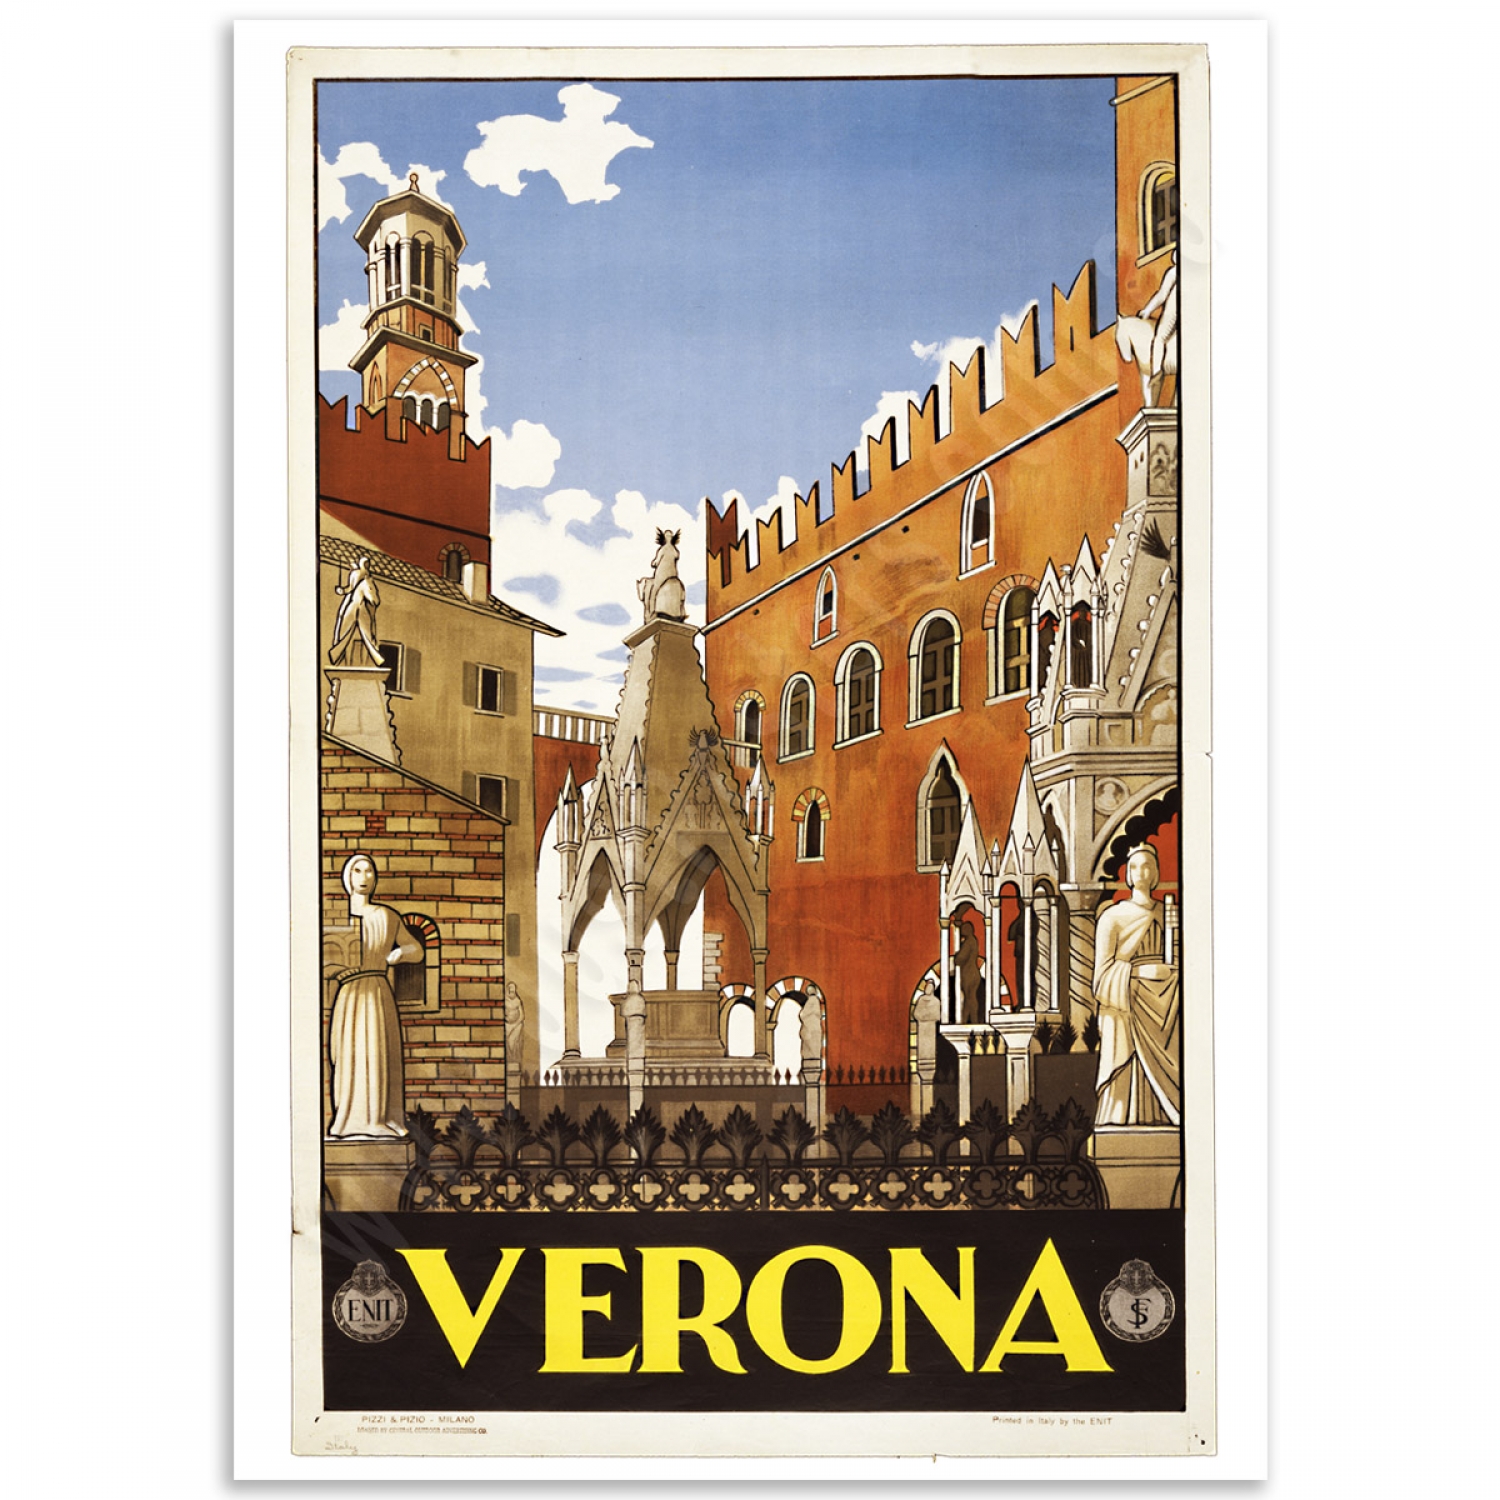 verona italy travel poster